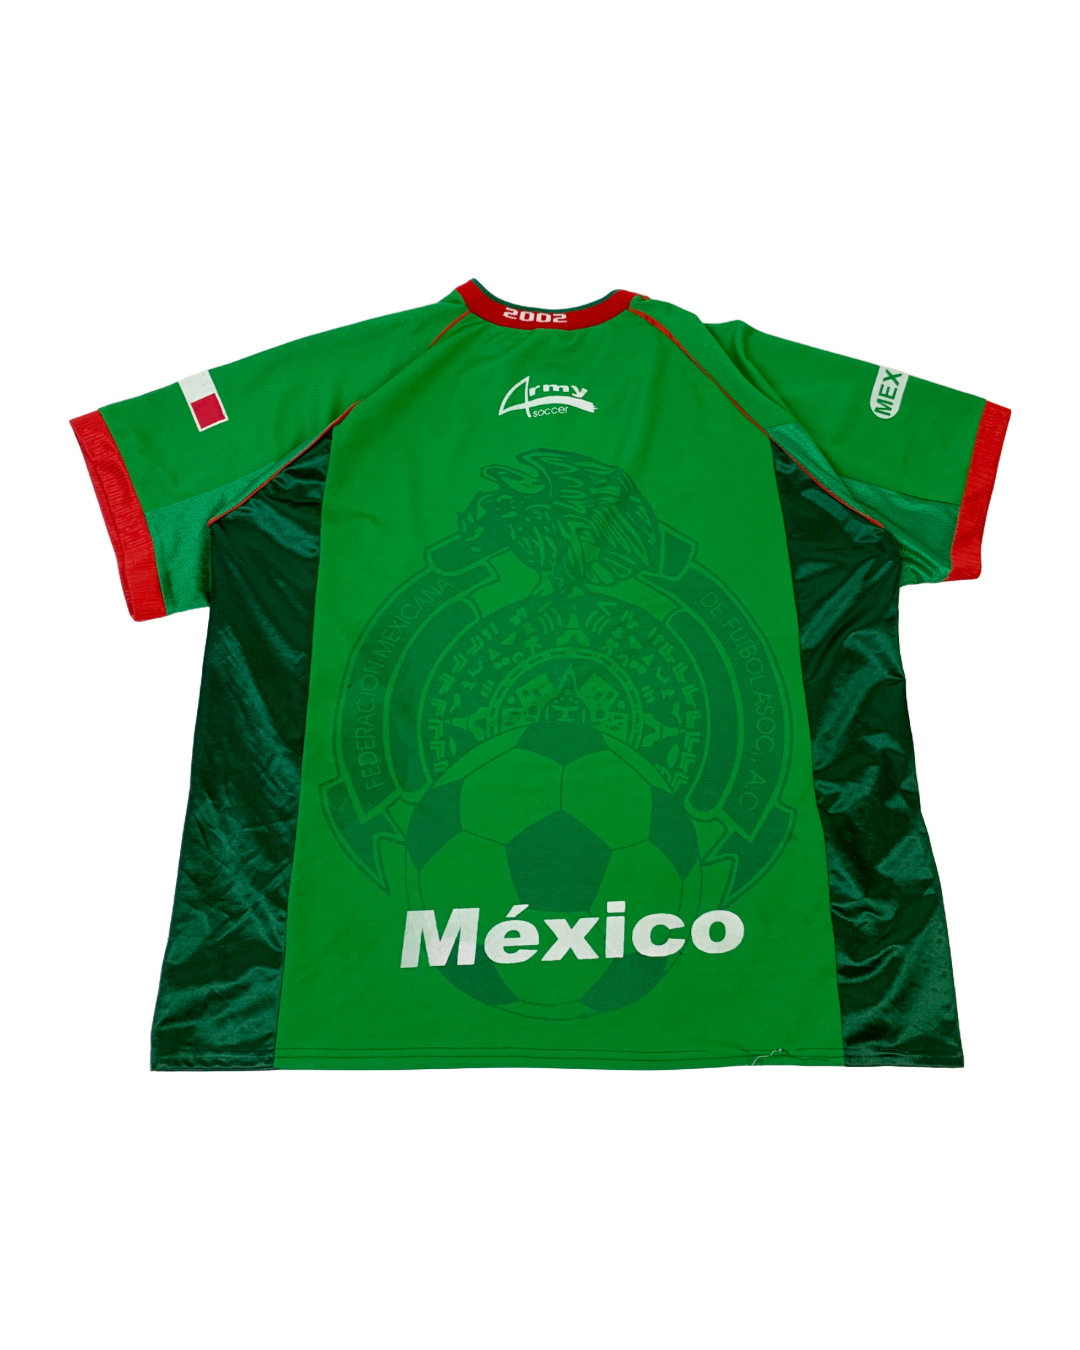 Mexico 2002 Vintage Jersey - XL